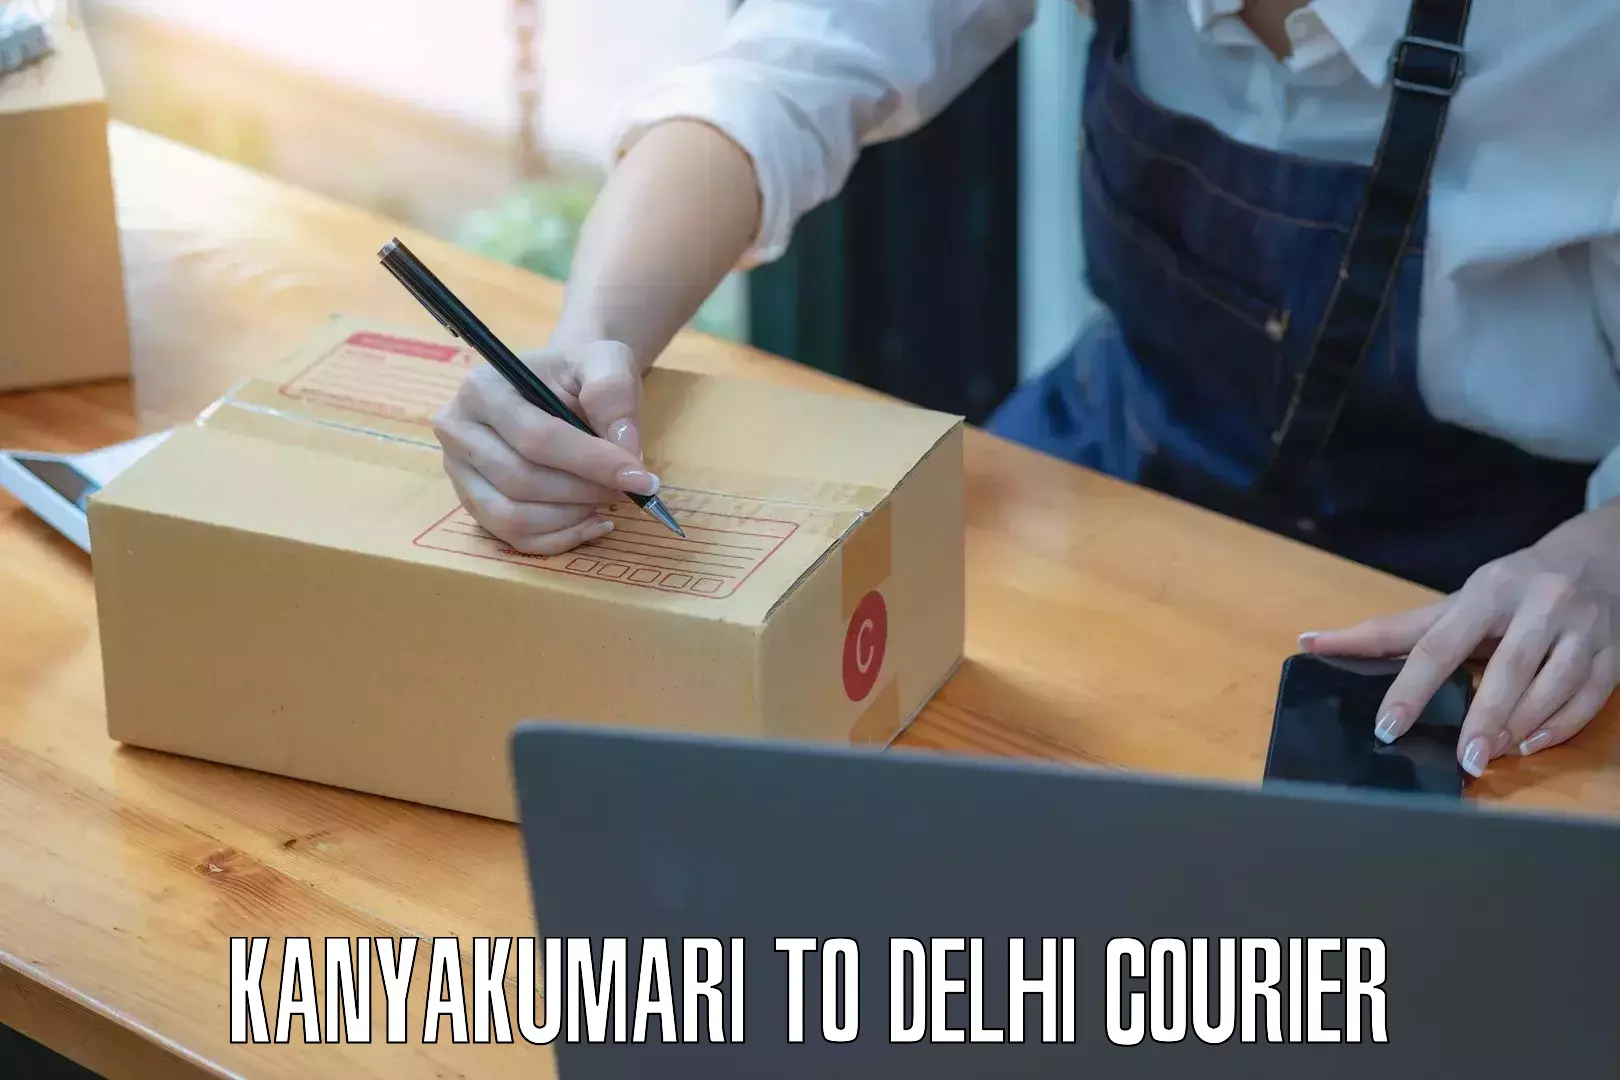 Efficient parcel service Kanyakumari to IIT Delhi